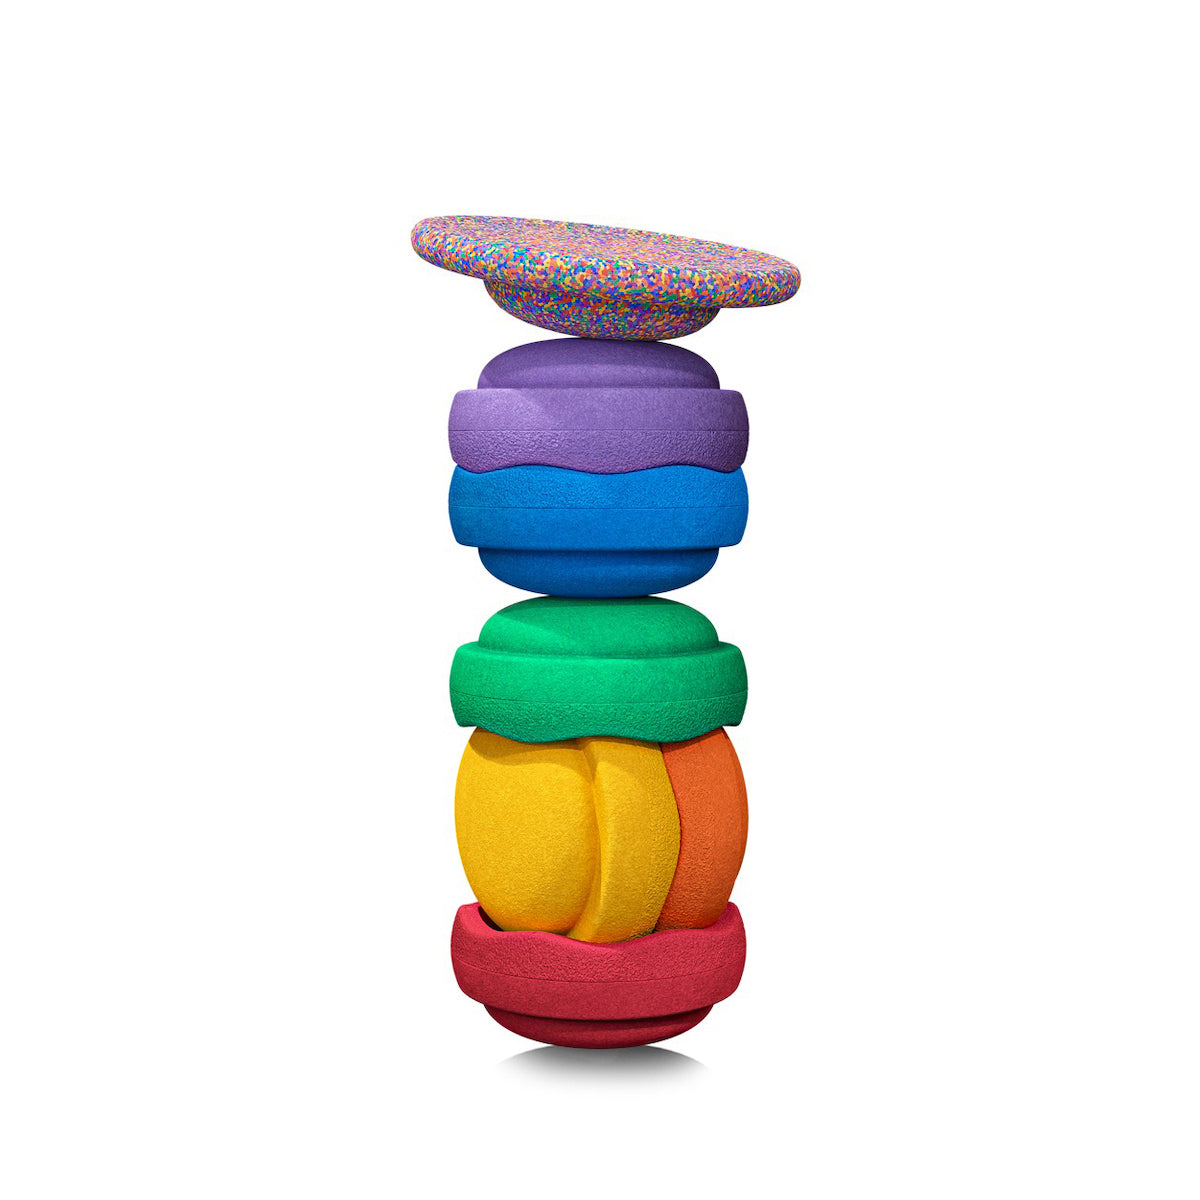 Met de Stapelstein Original rainbow set classic 6+1 stuks haal je de meest complete set Stapelstein inclusief een confetti balansbord in huis. Dit open einde speelgoed zorgt voor urenlang speelplezier. VanZus.